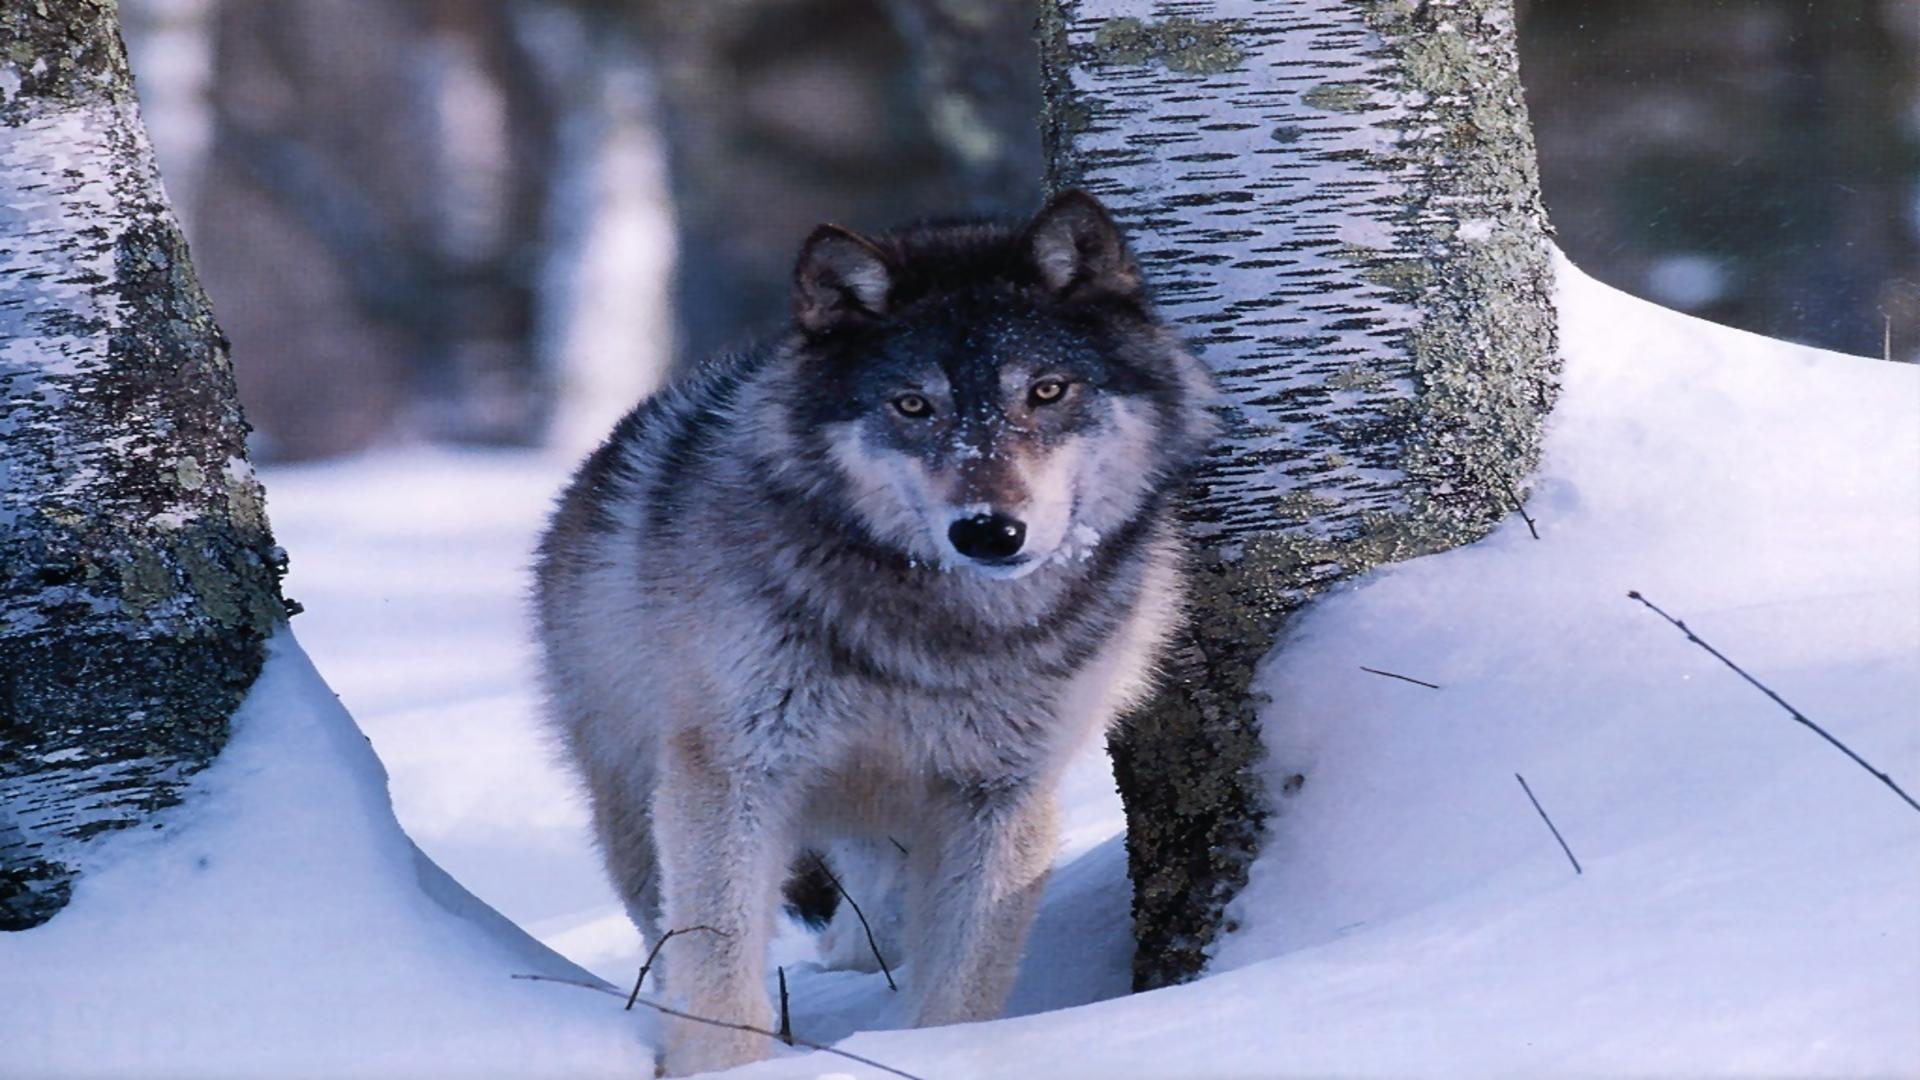 Wildlife grey wolf in snow free desktop background